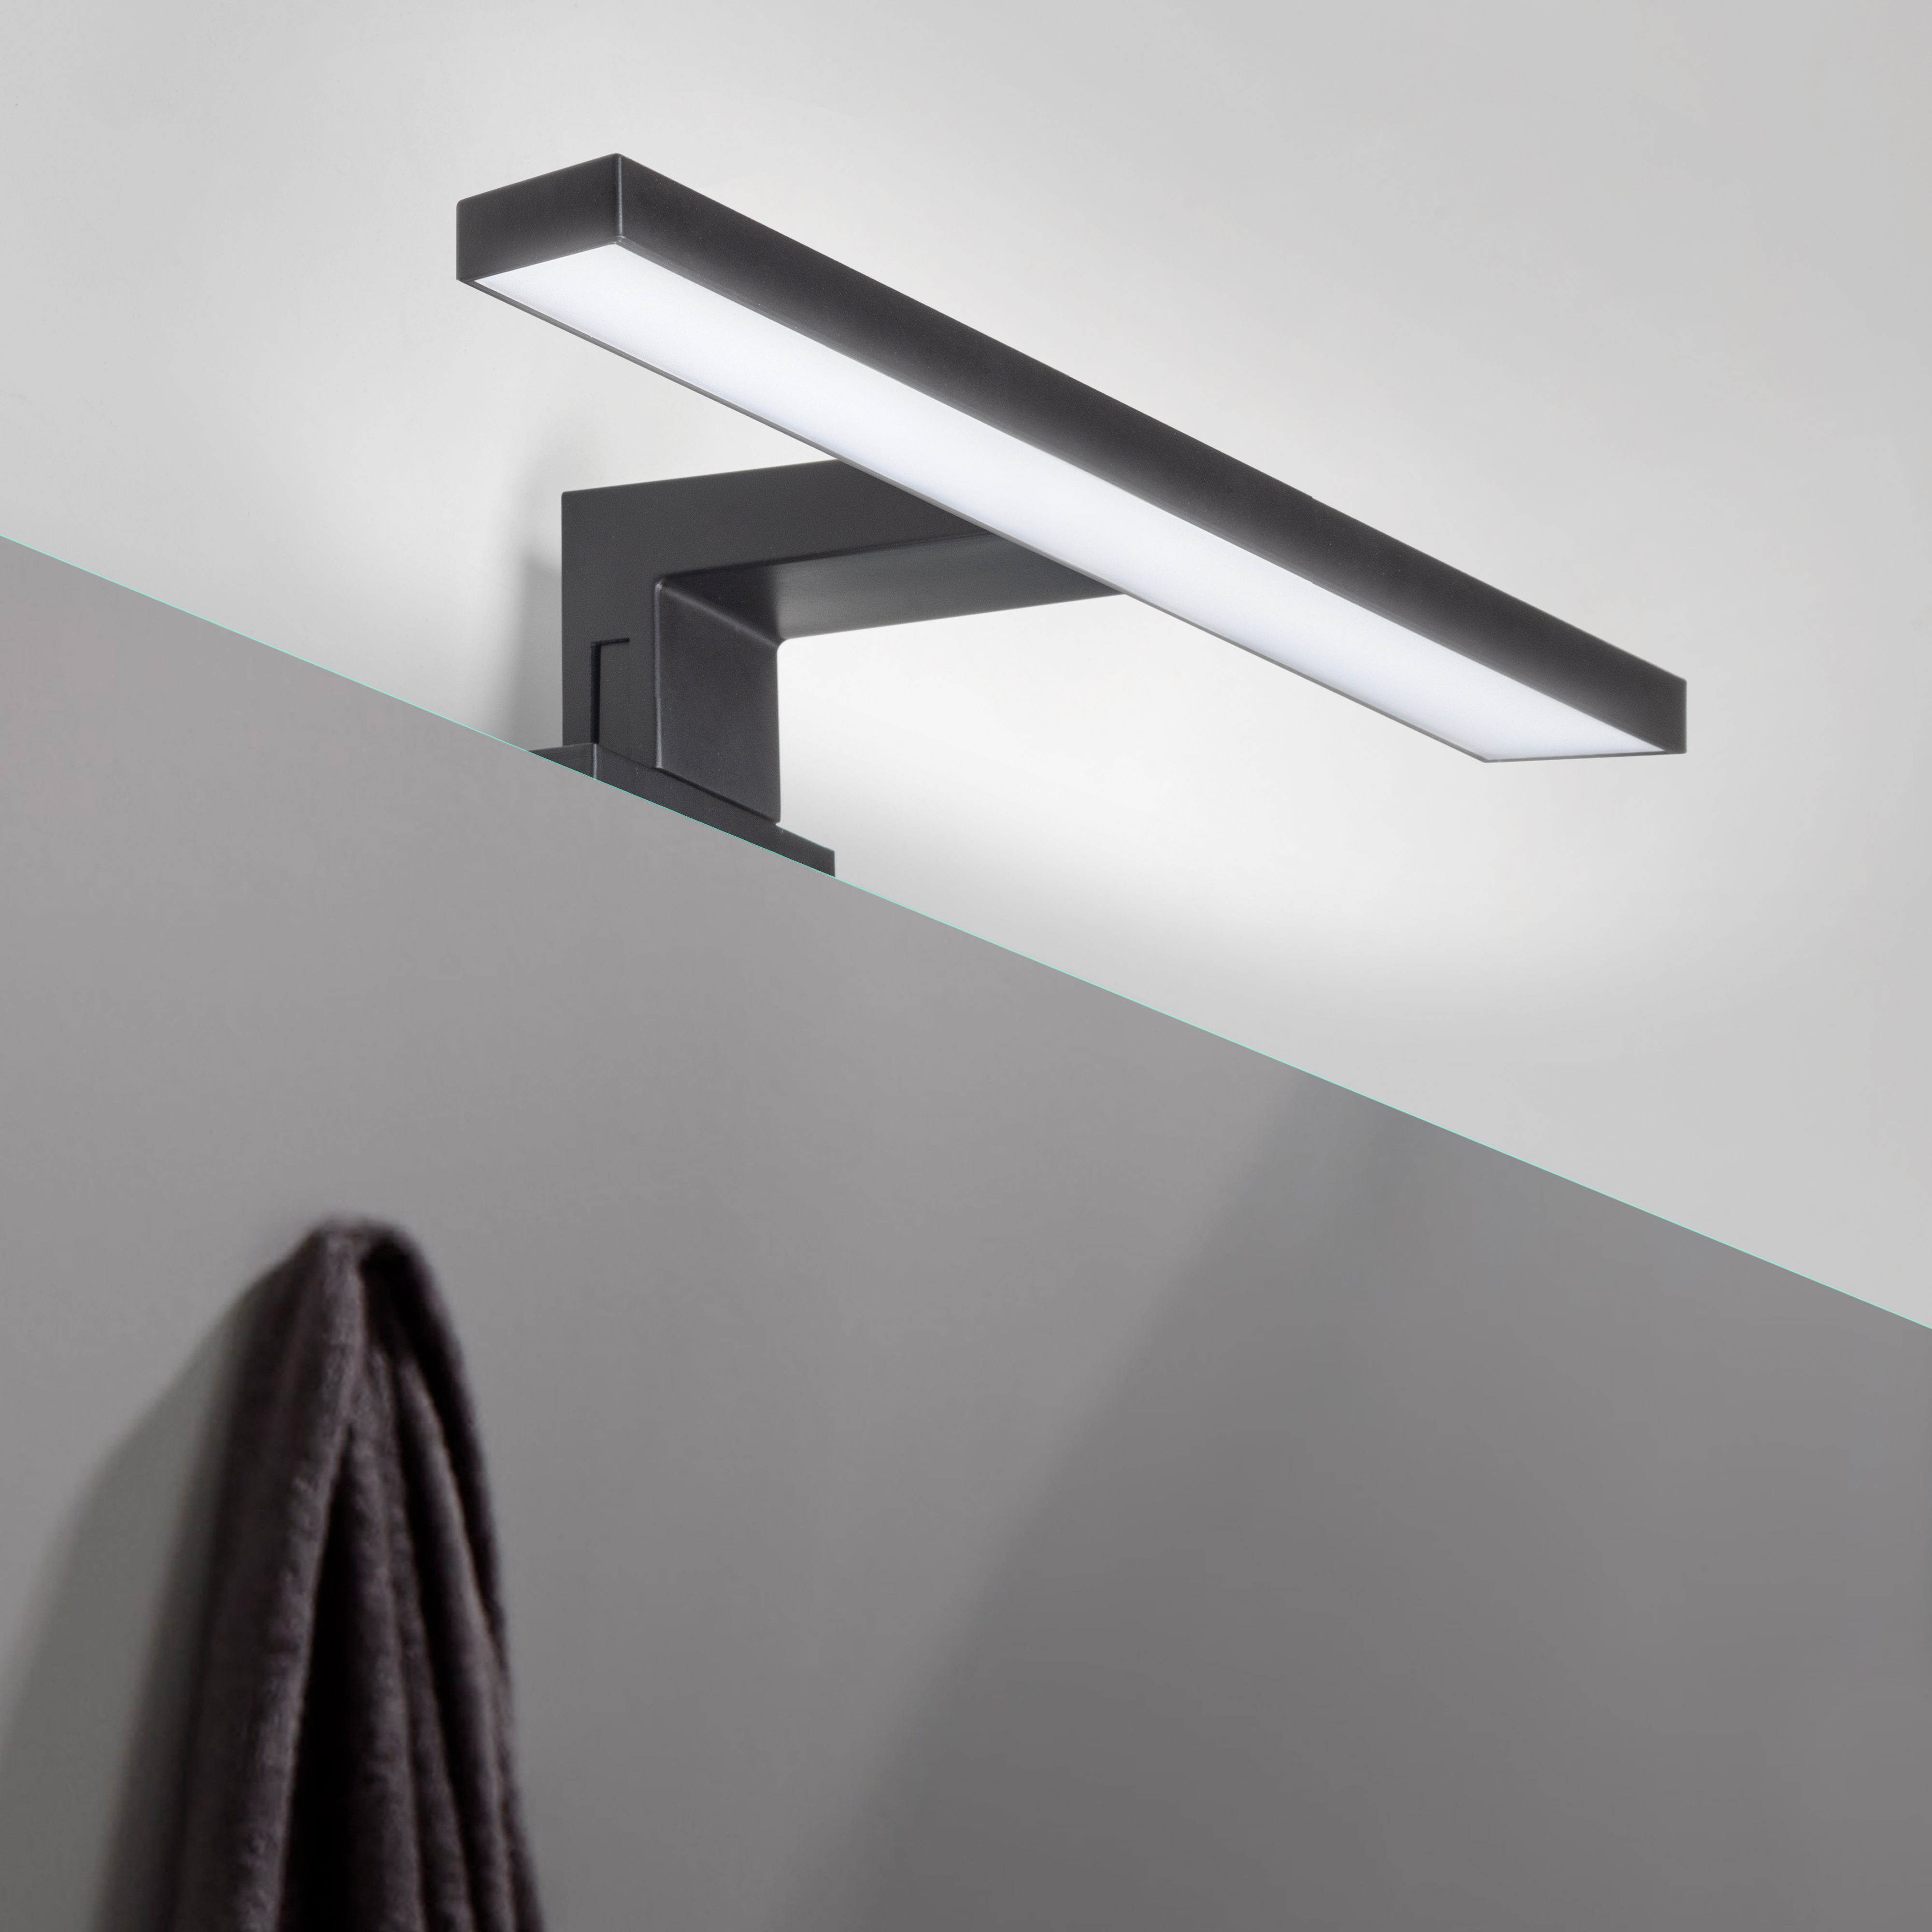  Spot LED pour miroir de salle de bain Virgo (AC 230V 50Hz), 6 W, Peint en noir, Plastique